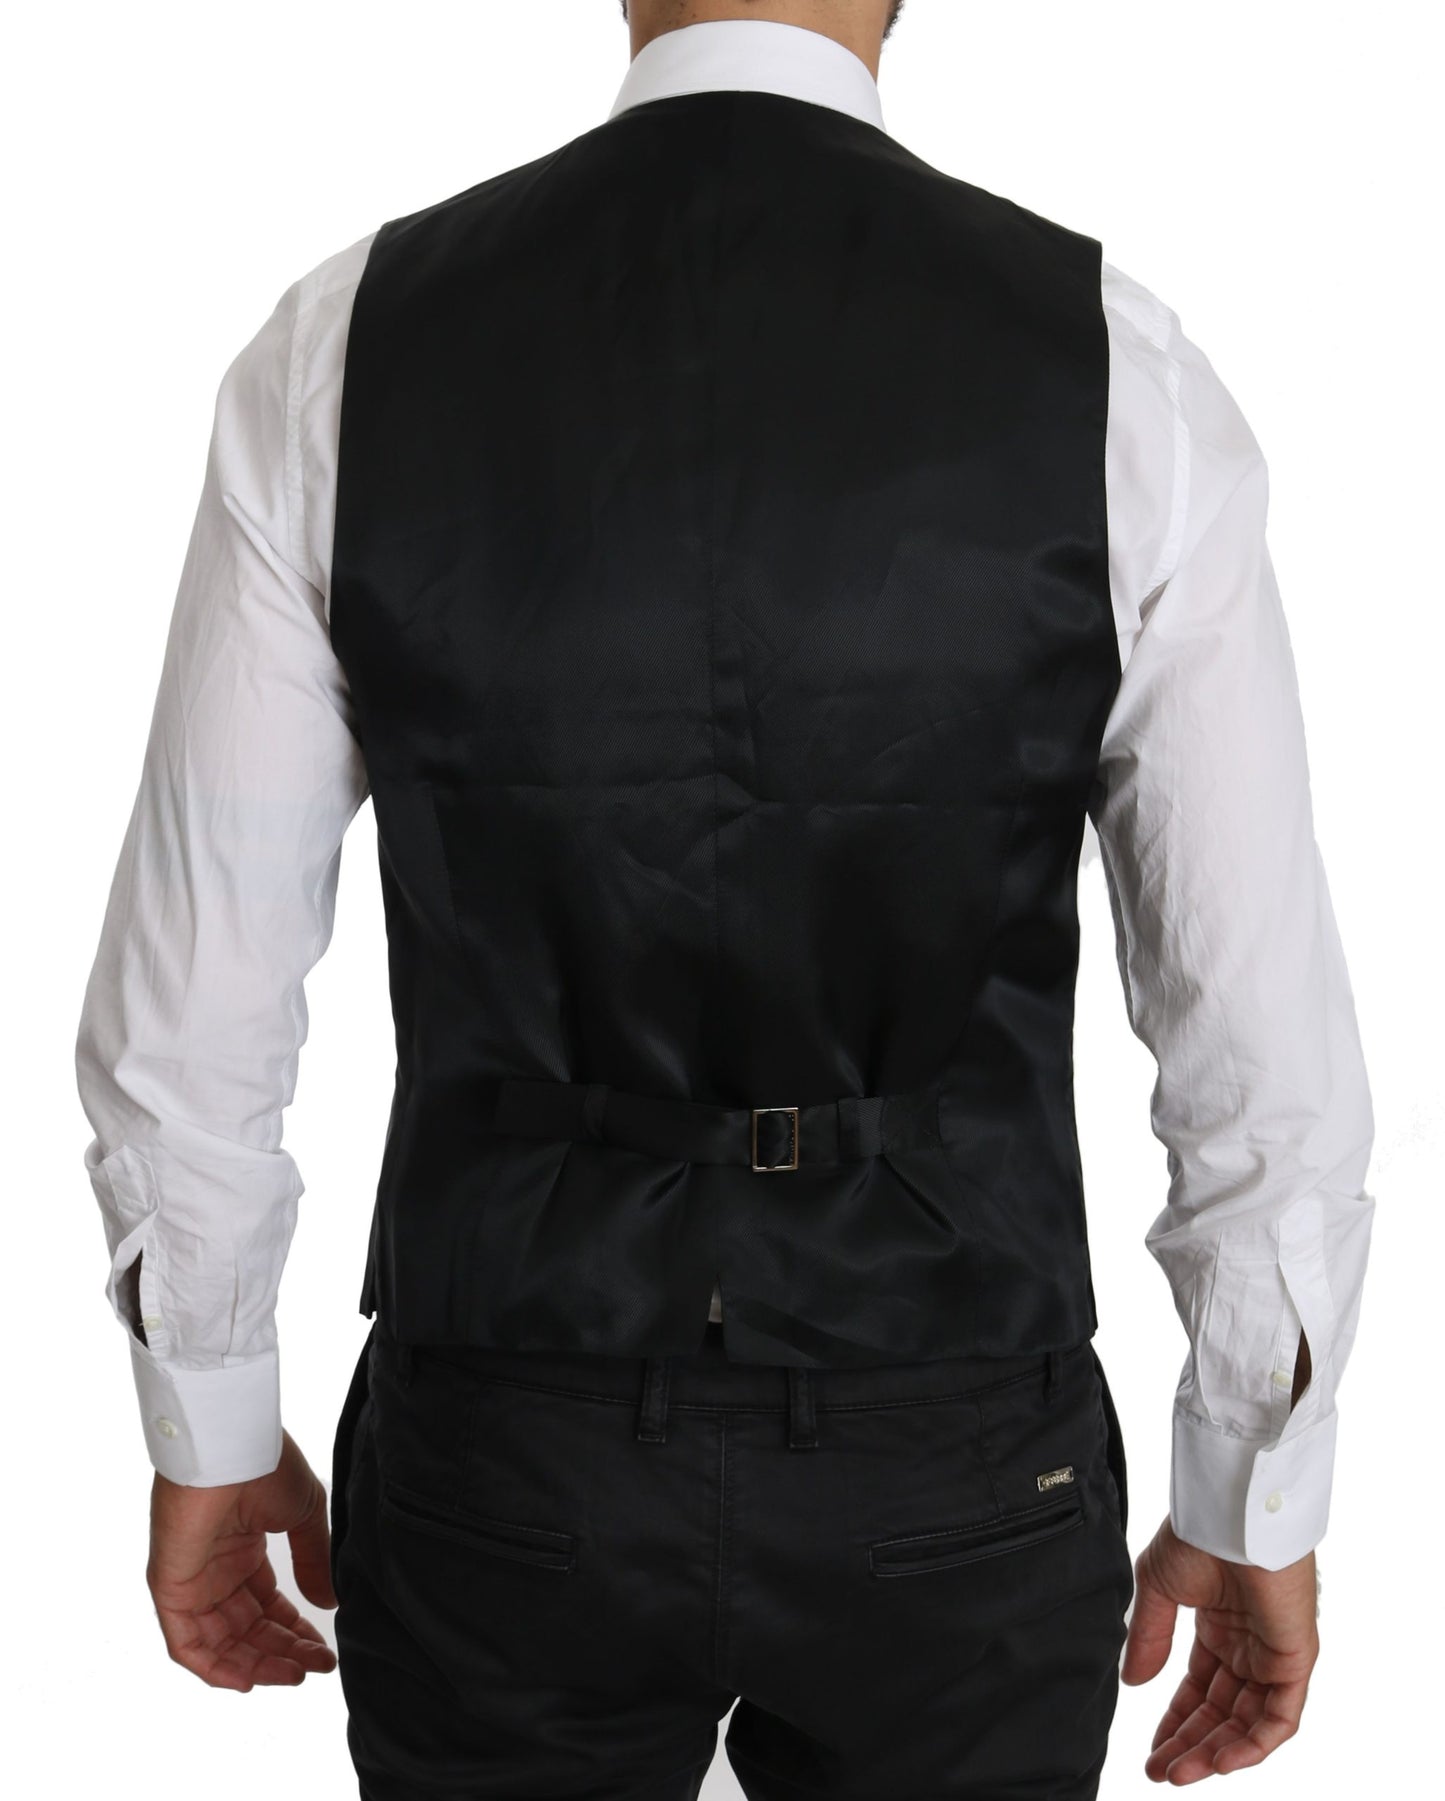 Black Waistcoat Formal Gilet Dress Wool  Vest